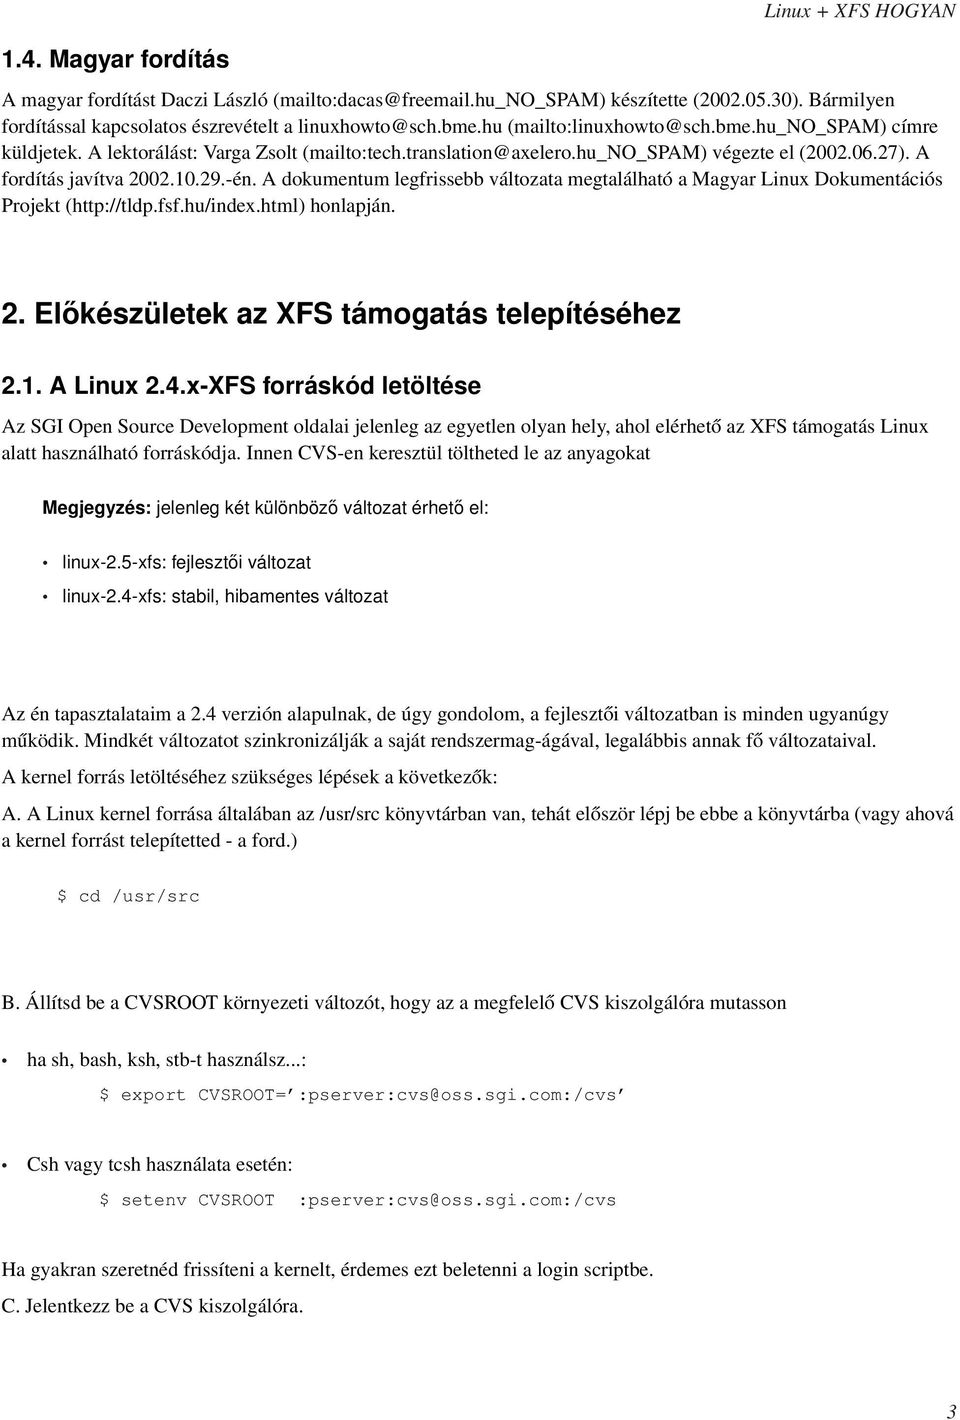 A dokumentum legfrissebb változata megtalálható a Magyar Linux Dokumentációs Projekt (http://tldp.fsf.hu/index.html) honlapján. 2. Előkészületek az XFS támogatás telepítéséhez 2.1. A Linux 2.4.